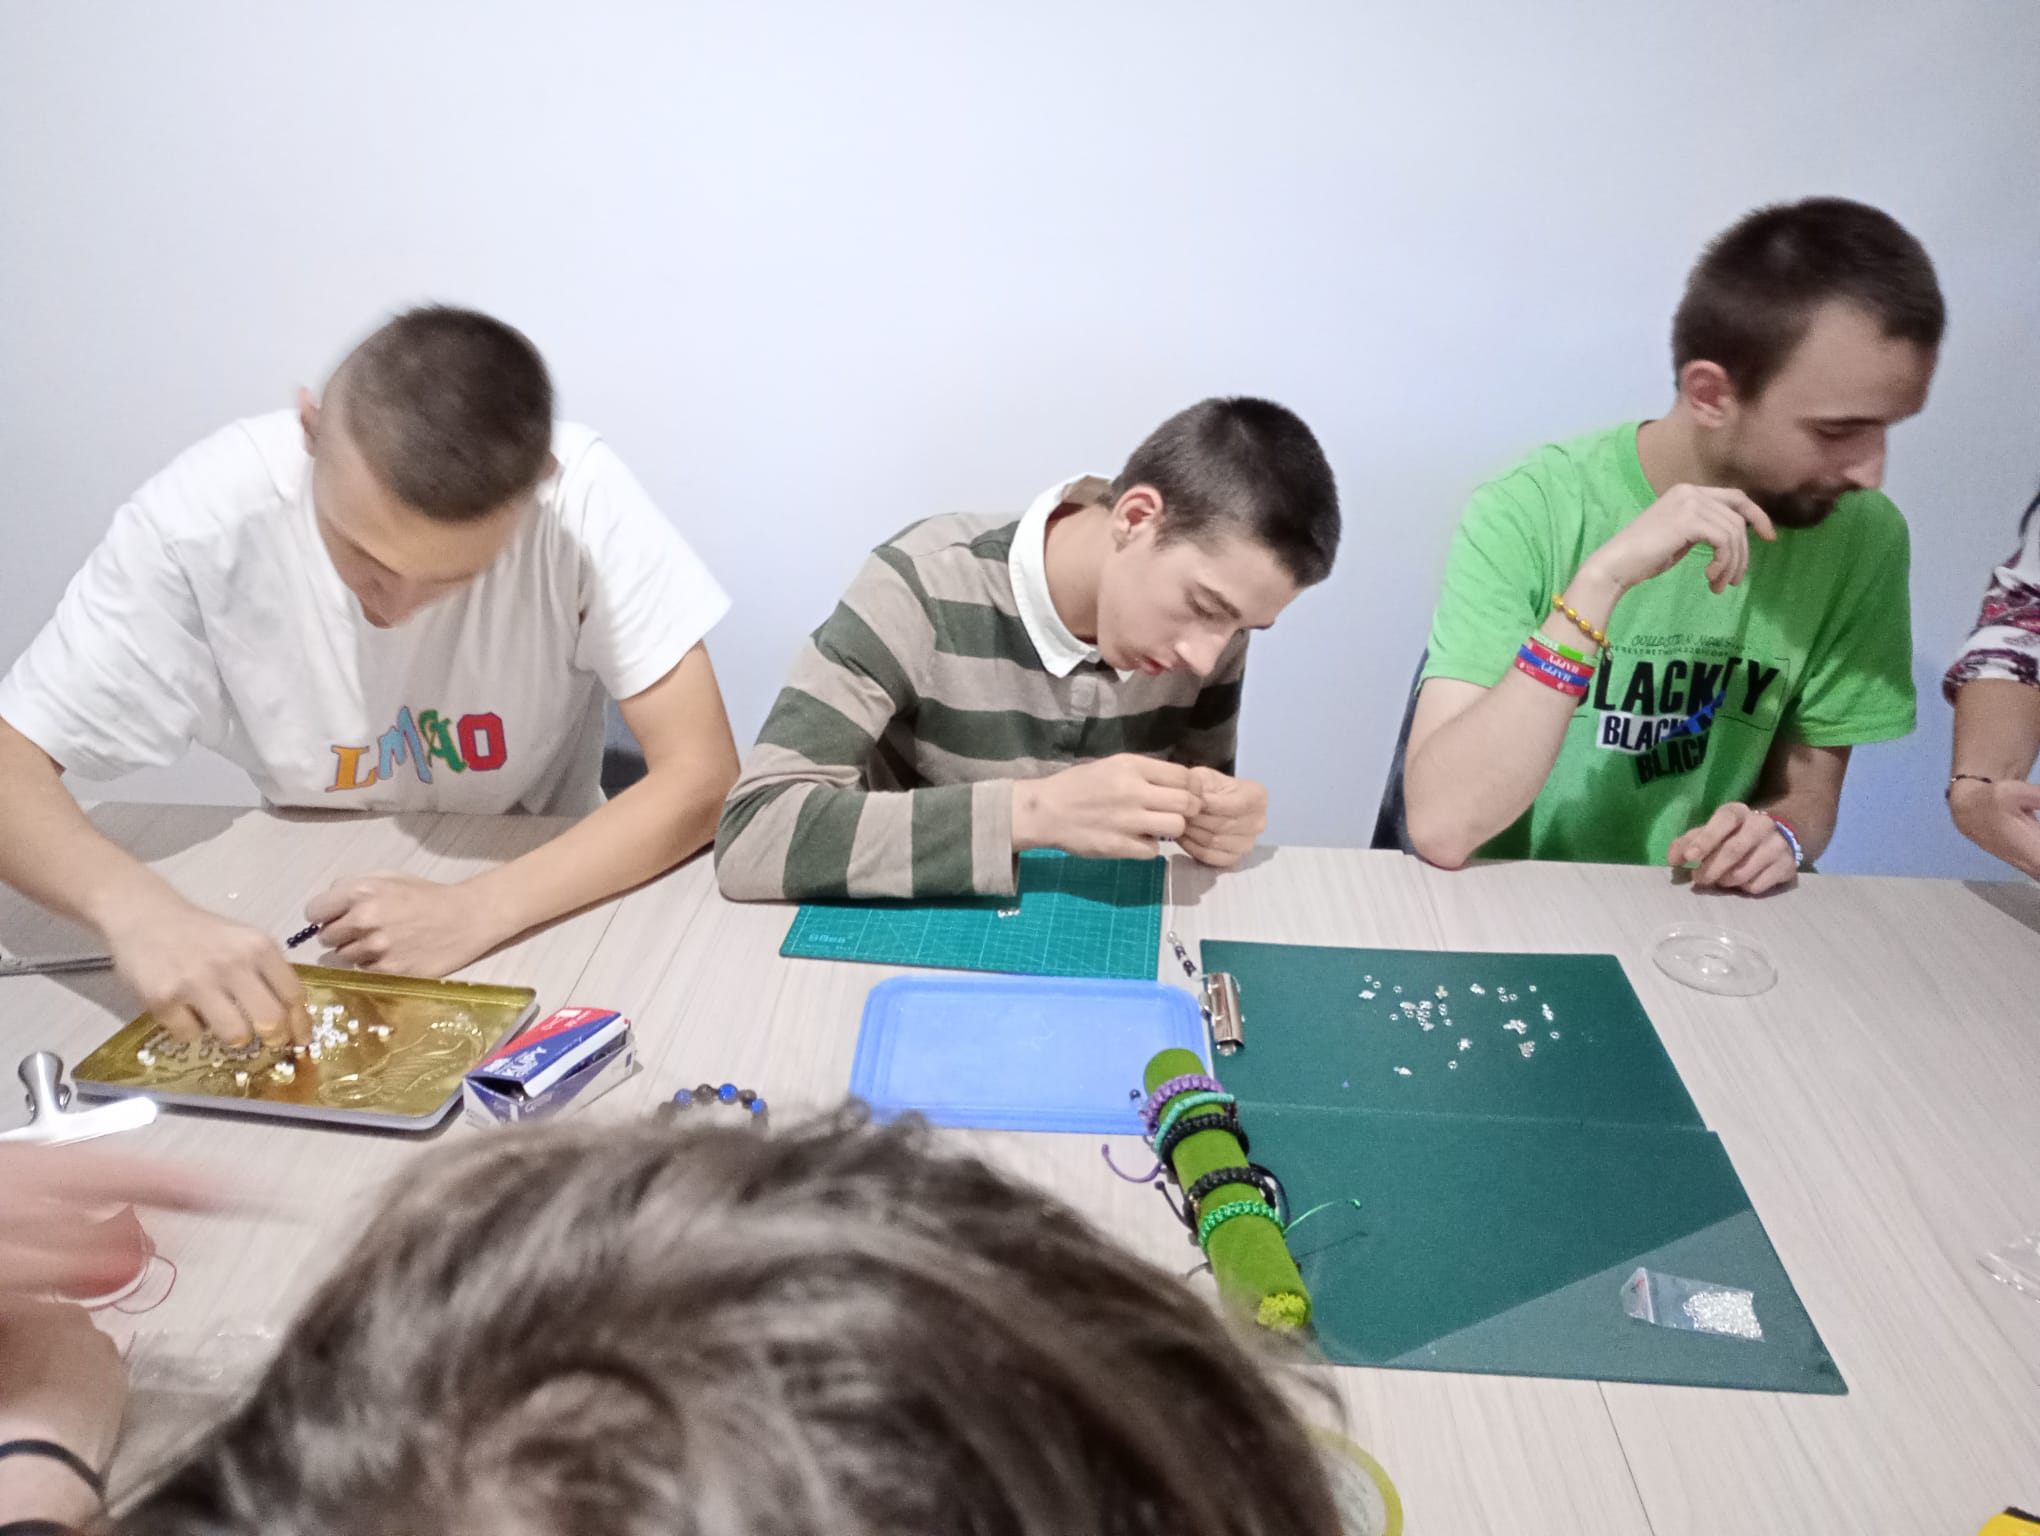 Zajęcia z programu "Fajna ferajna" | Uczestnicy warsztatów siedzą za stołem i nawlekają koraliki rozłożone na podkładkach na blacie..jpg